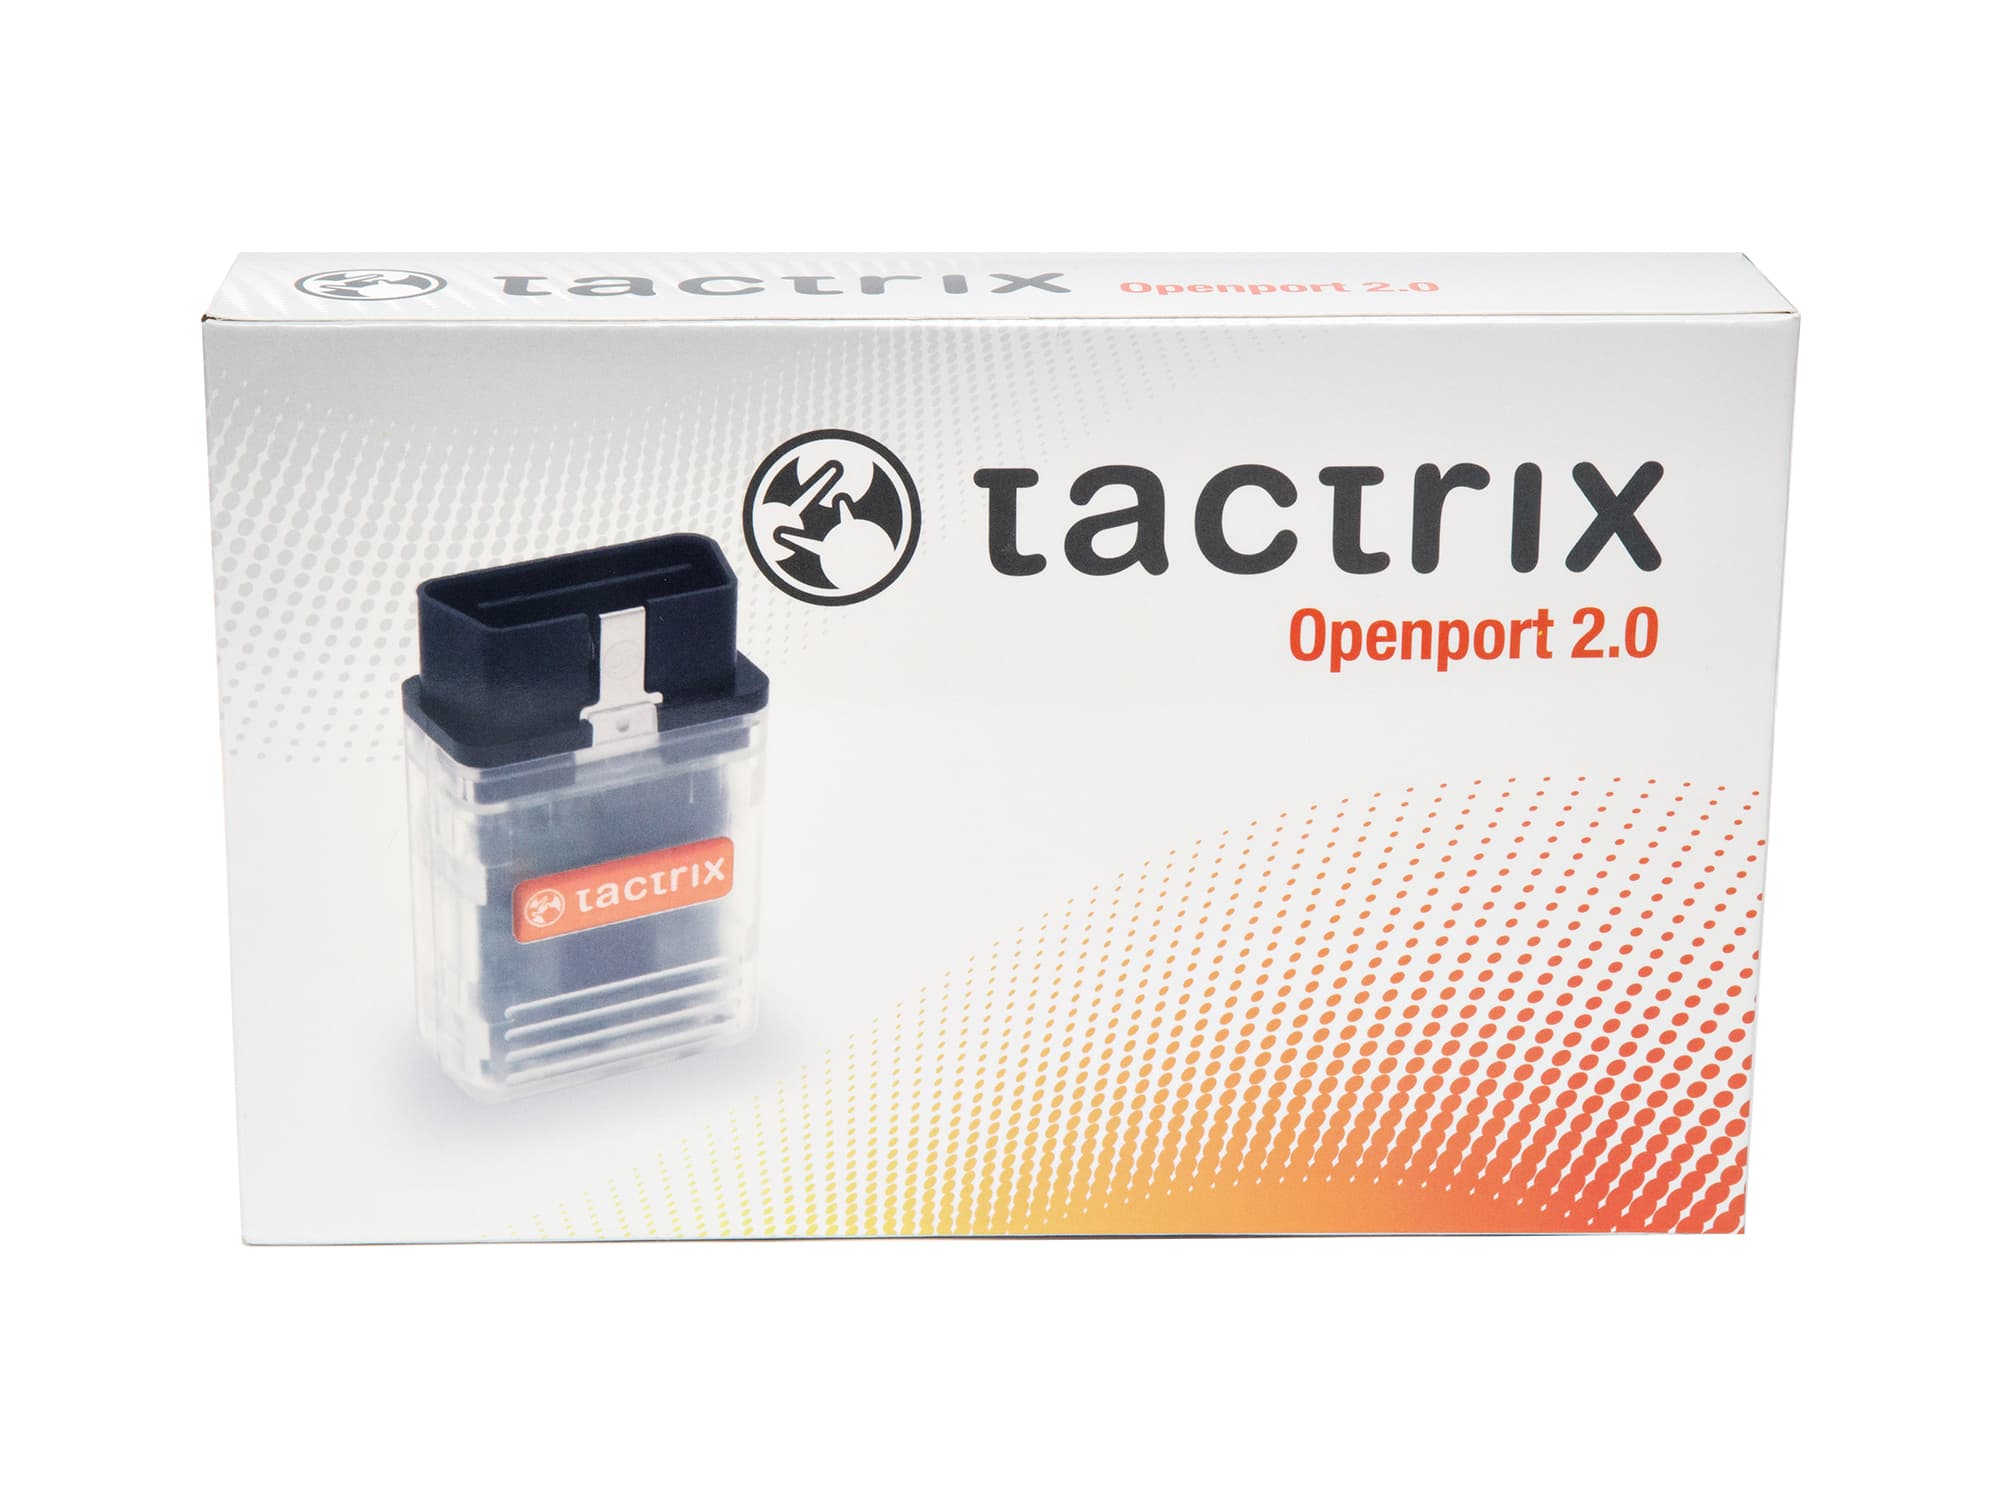 tactrix openport 2.0 rev h